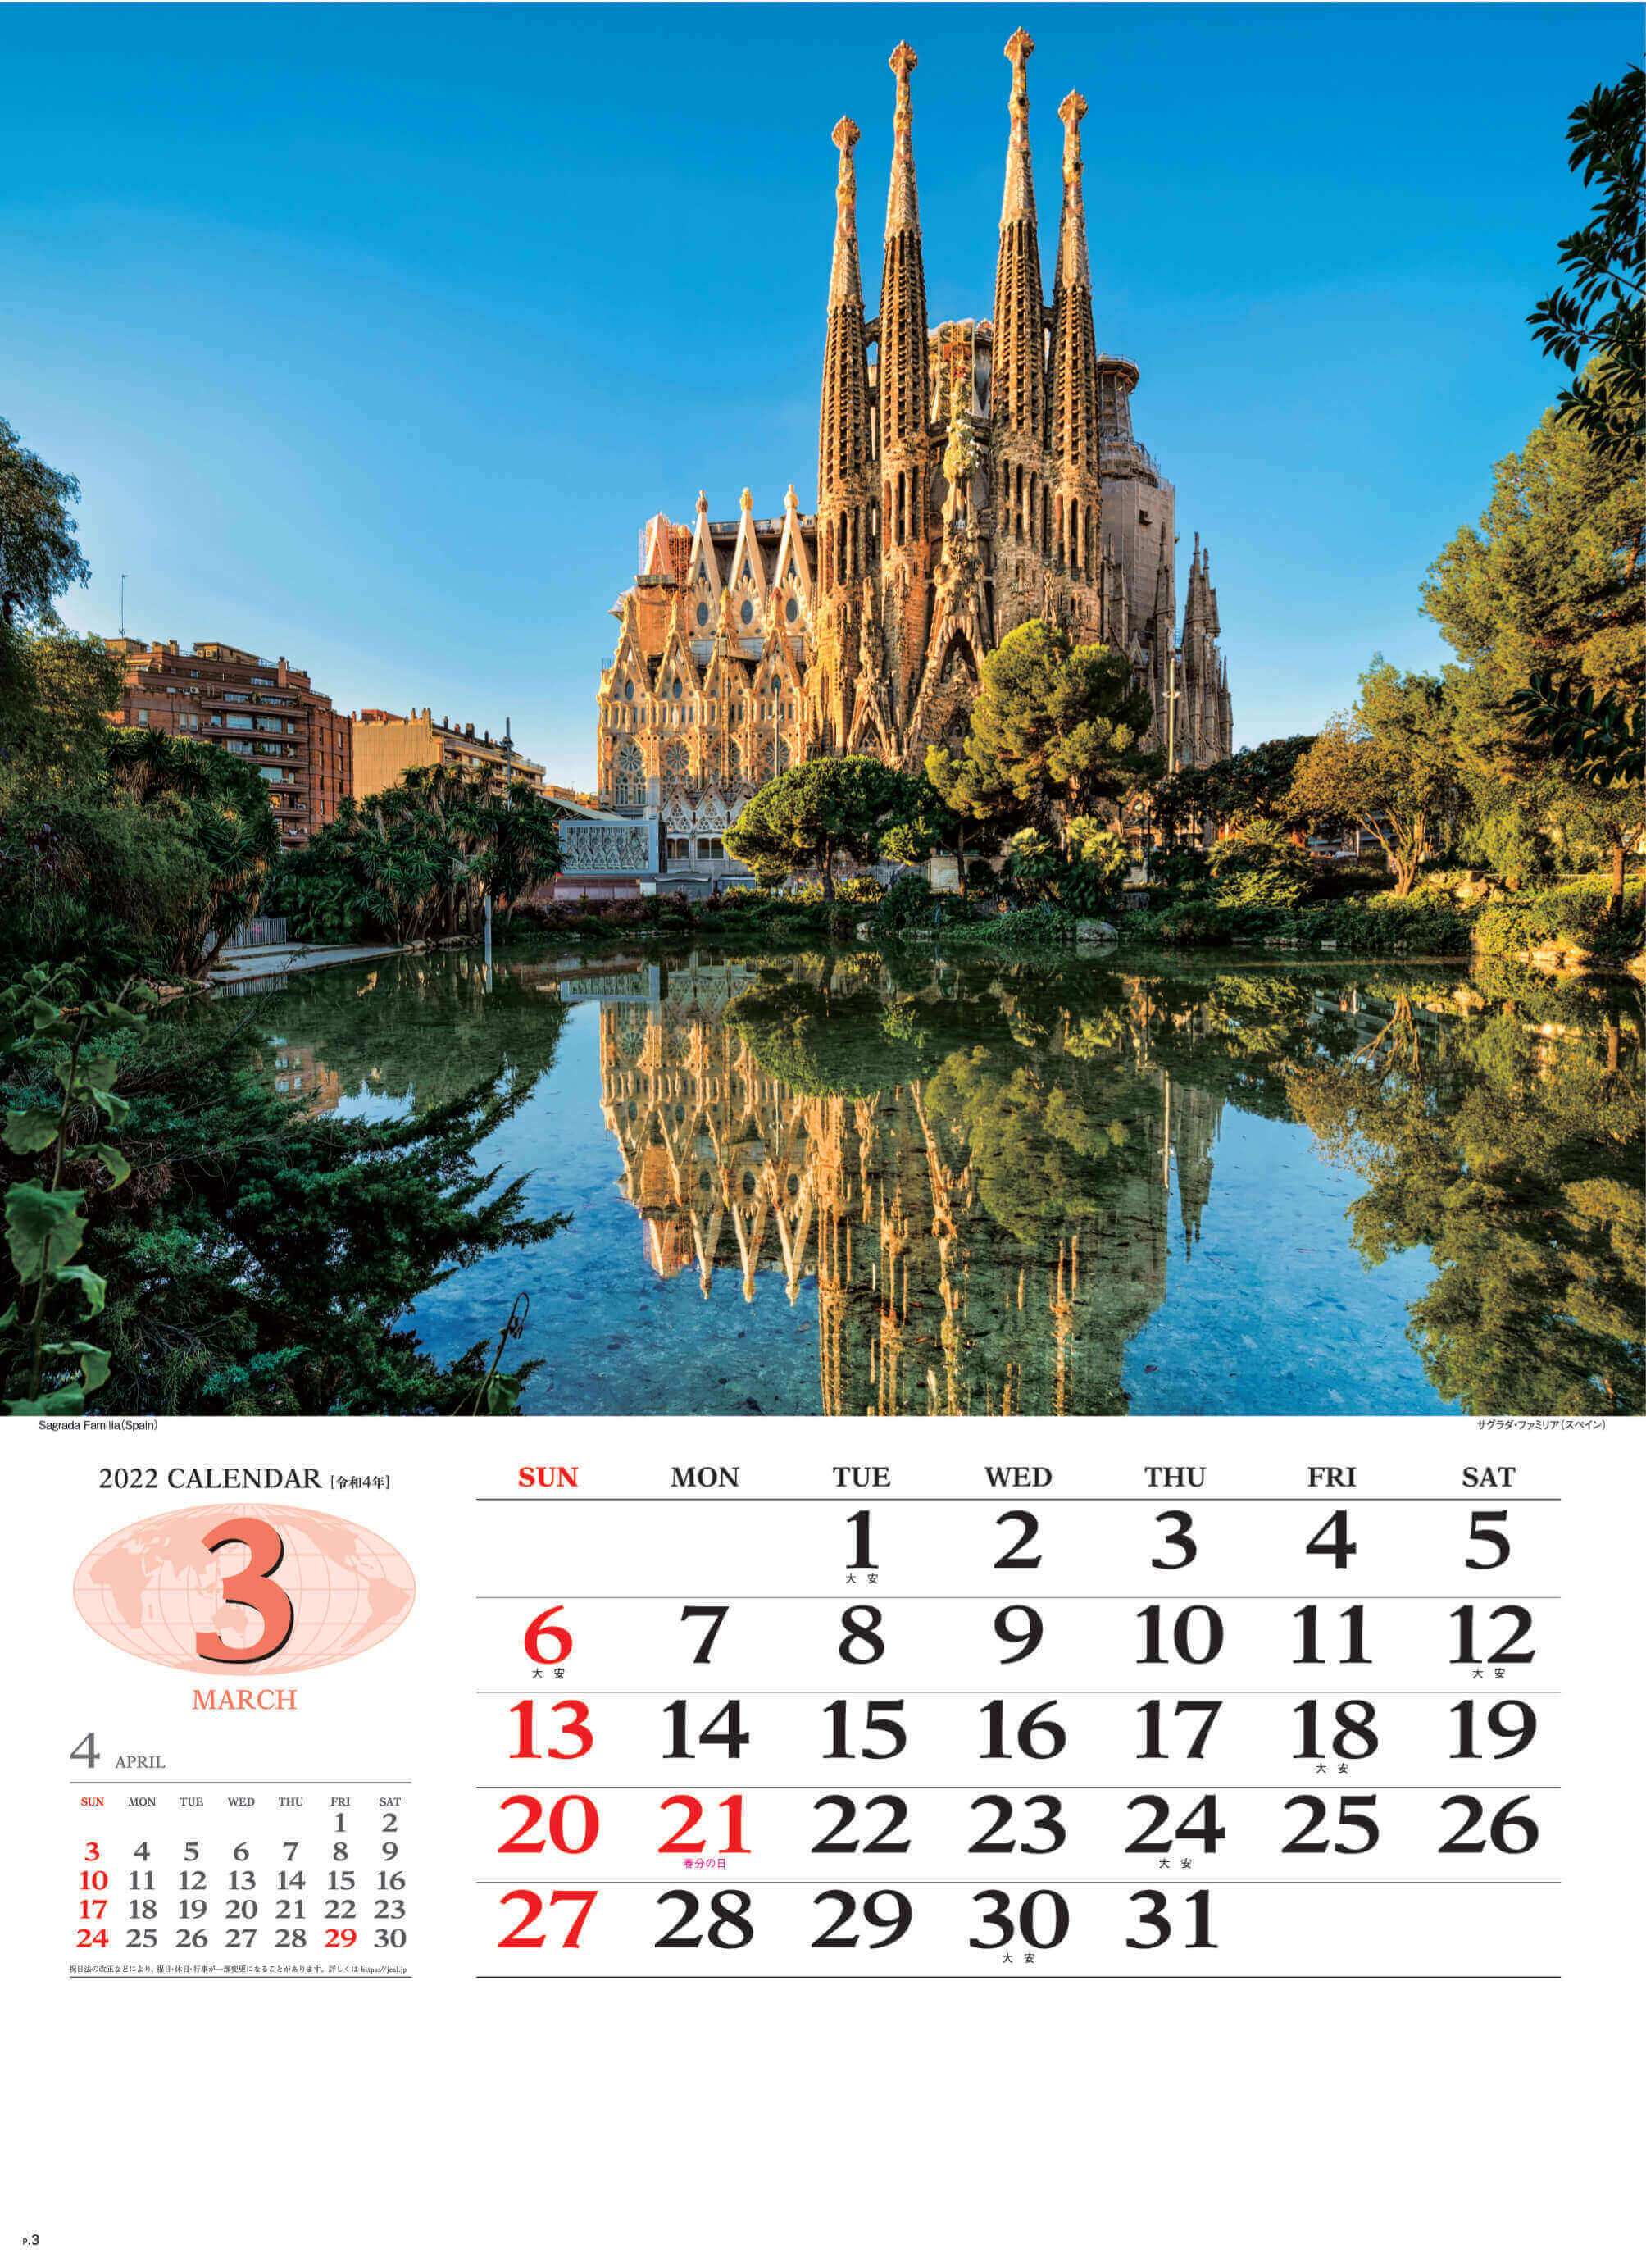 3月 サグラダファミリア スペイン 世界の景観 2022年カレンダーの画像